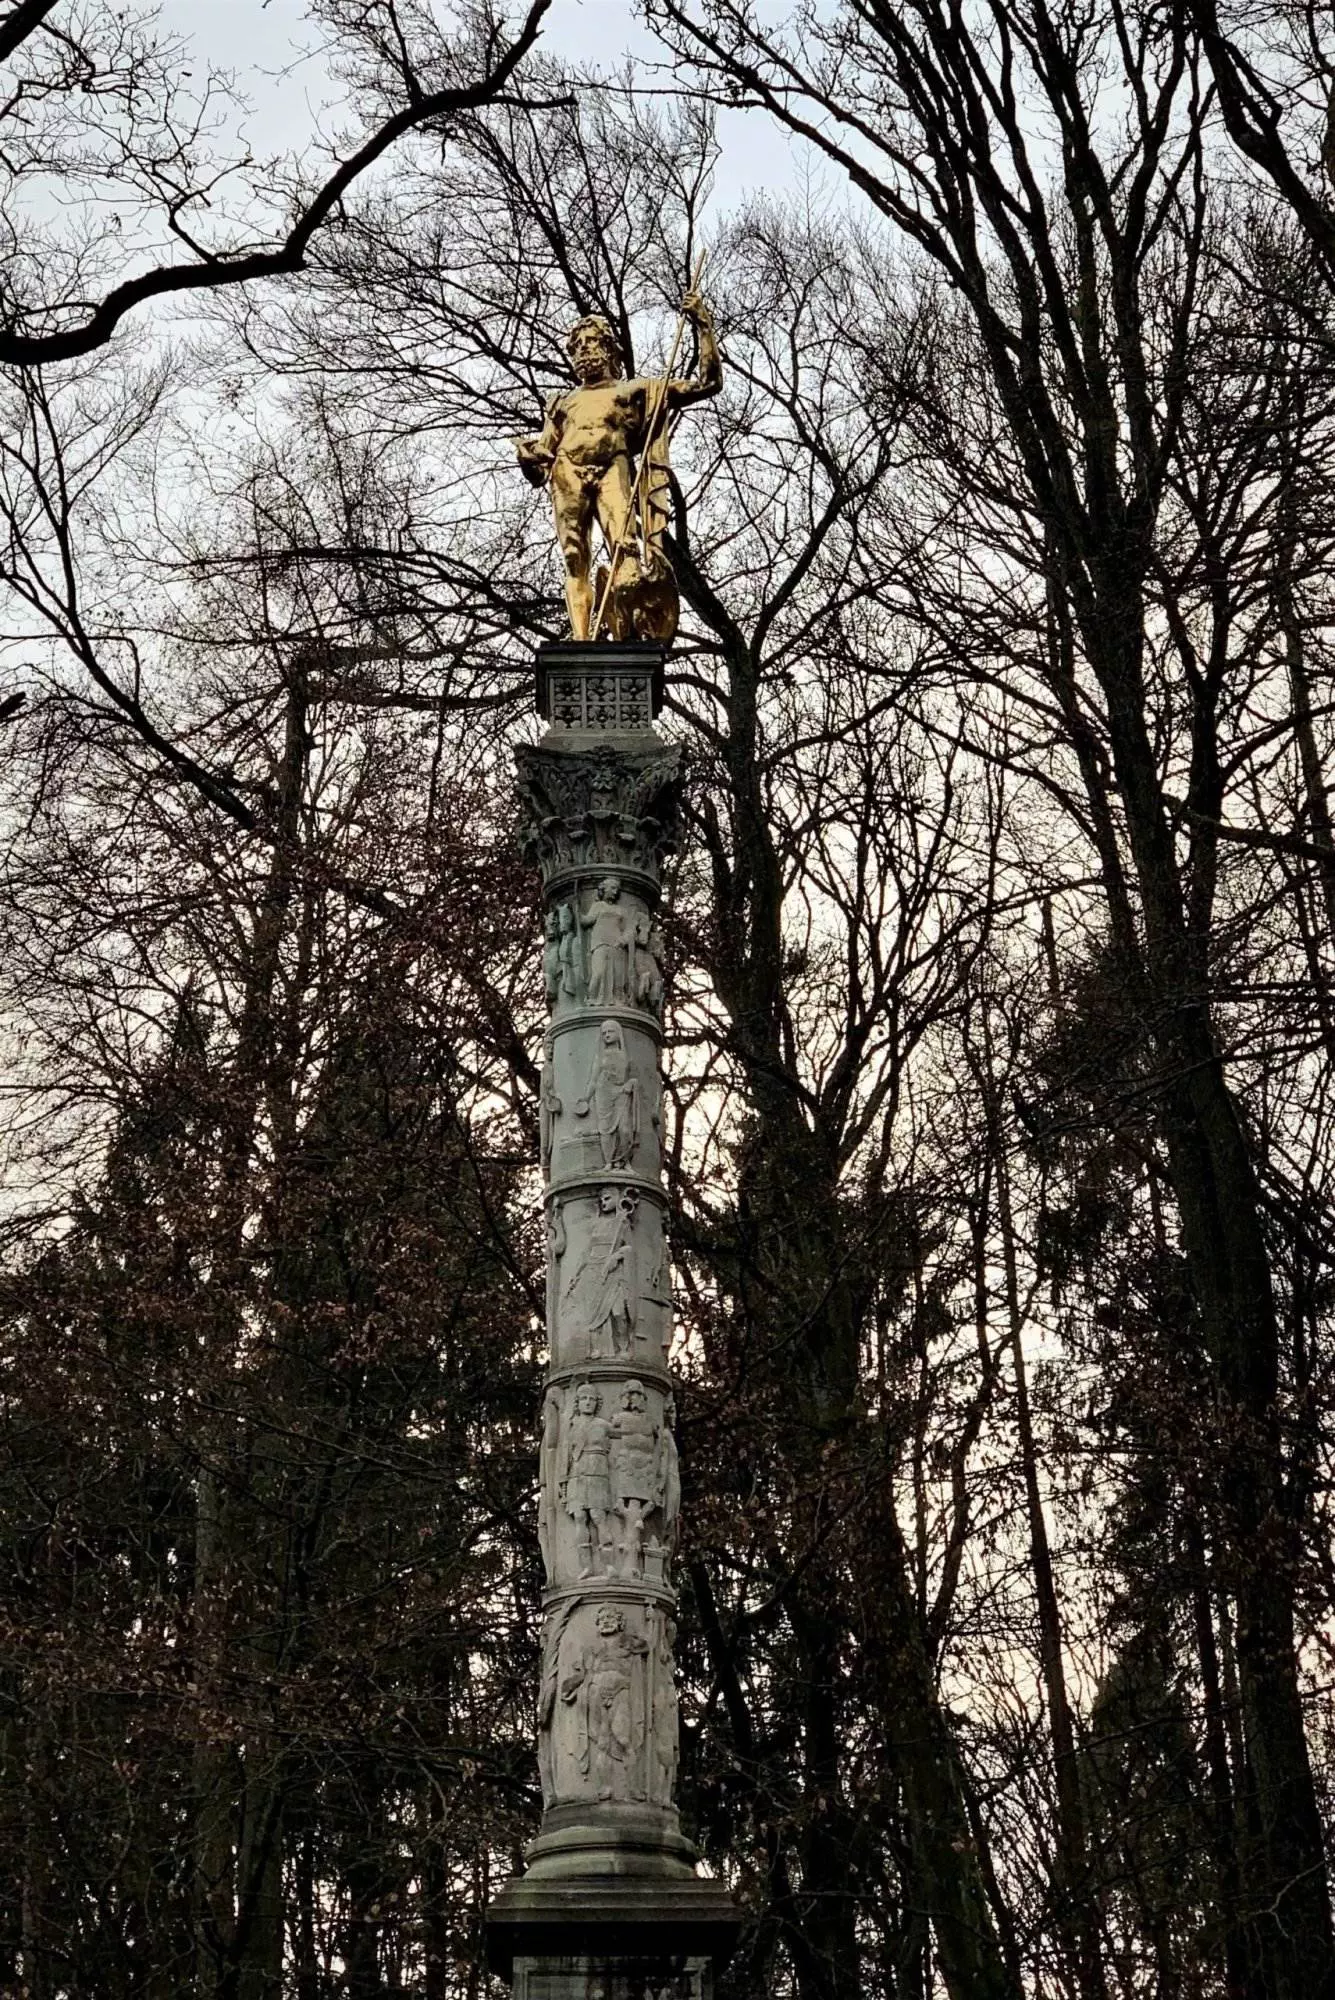 Eine Statue steht auf einer Säule in einem Park.